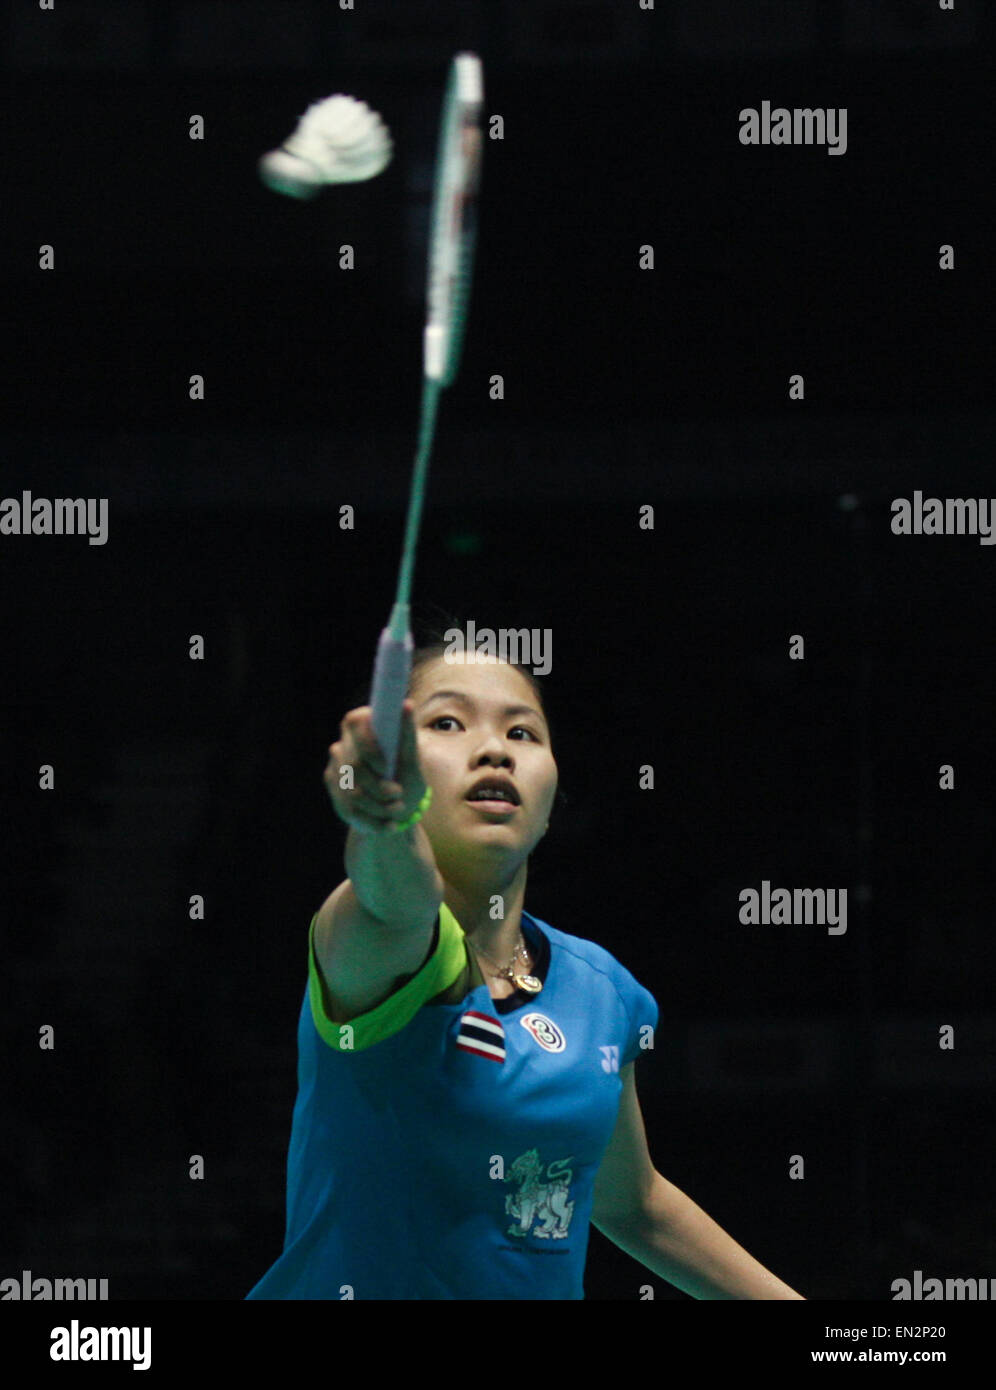 Dong Feng Citroen Badminton Asia Championships 2015 in Wuhan, China am 26. April 2015.Intanon Ratchanok von Thailand kehrt Li Xuerui von China während ihrer Damen Einzel Finale Stockfoto